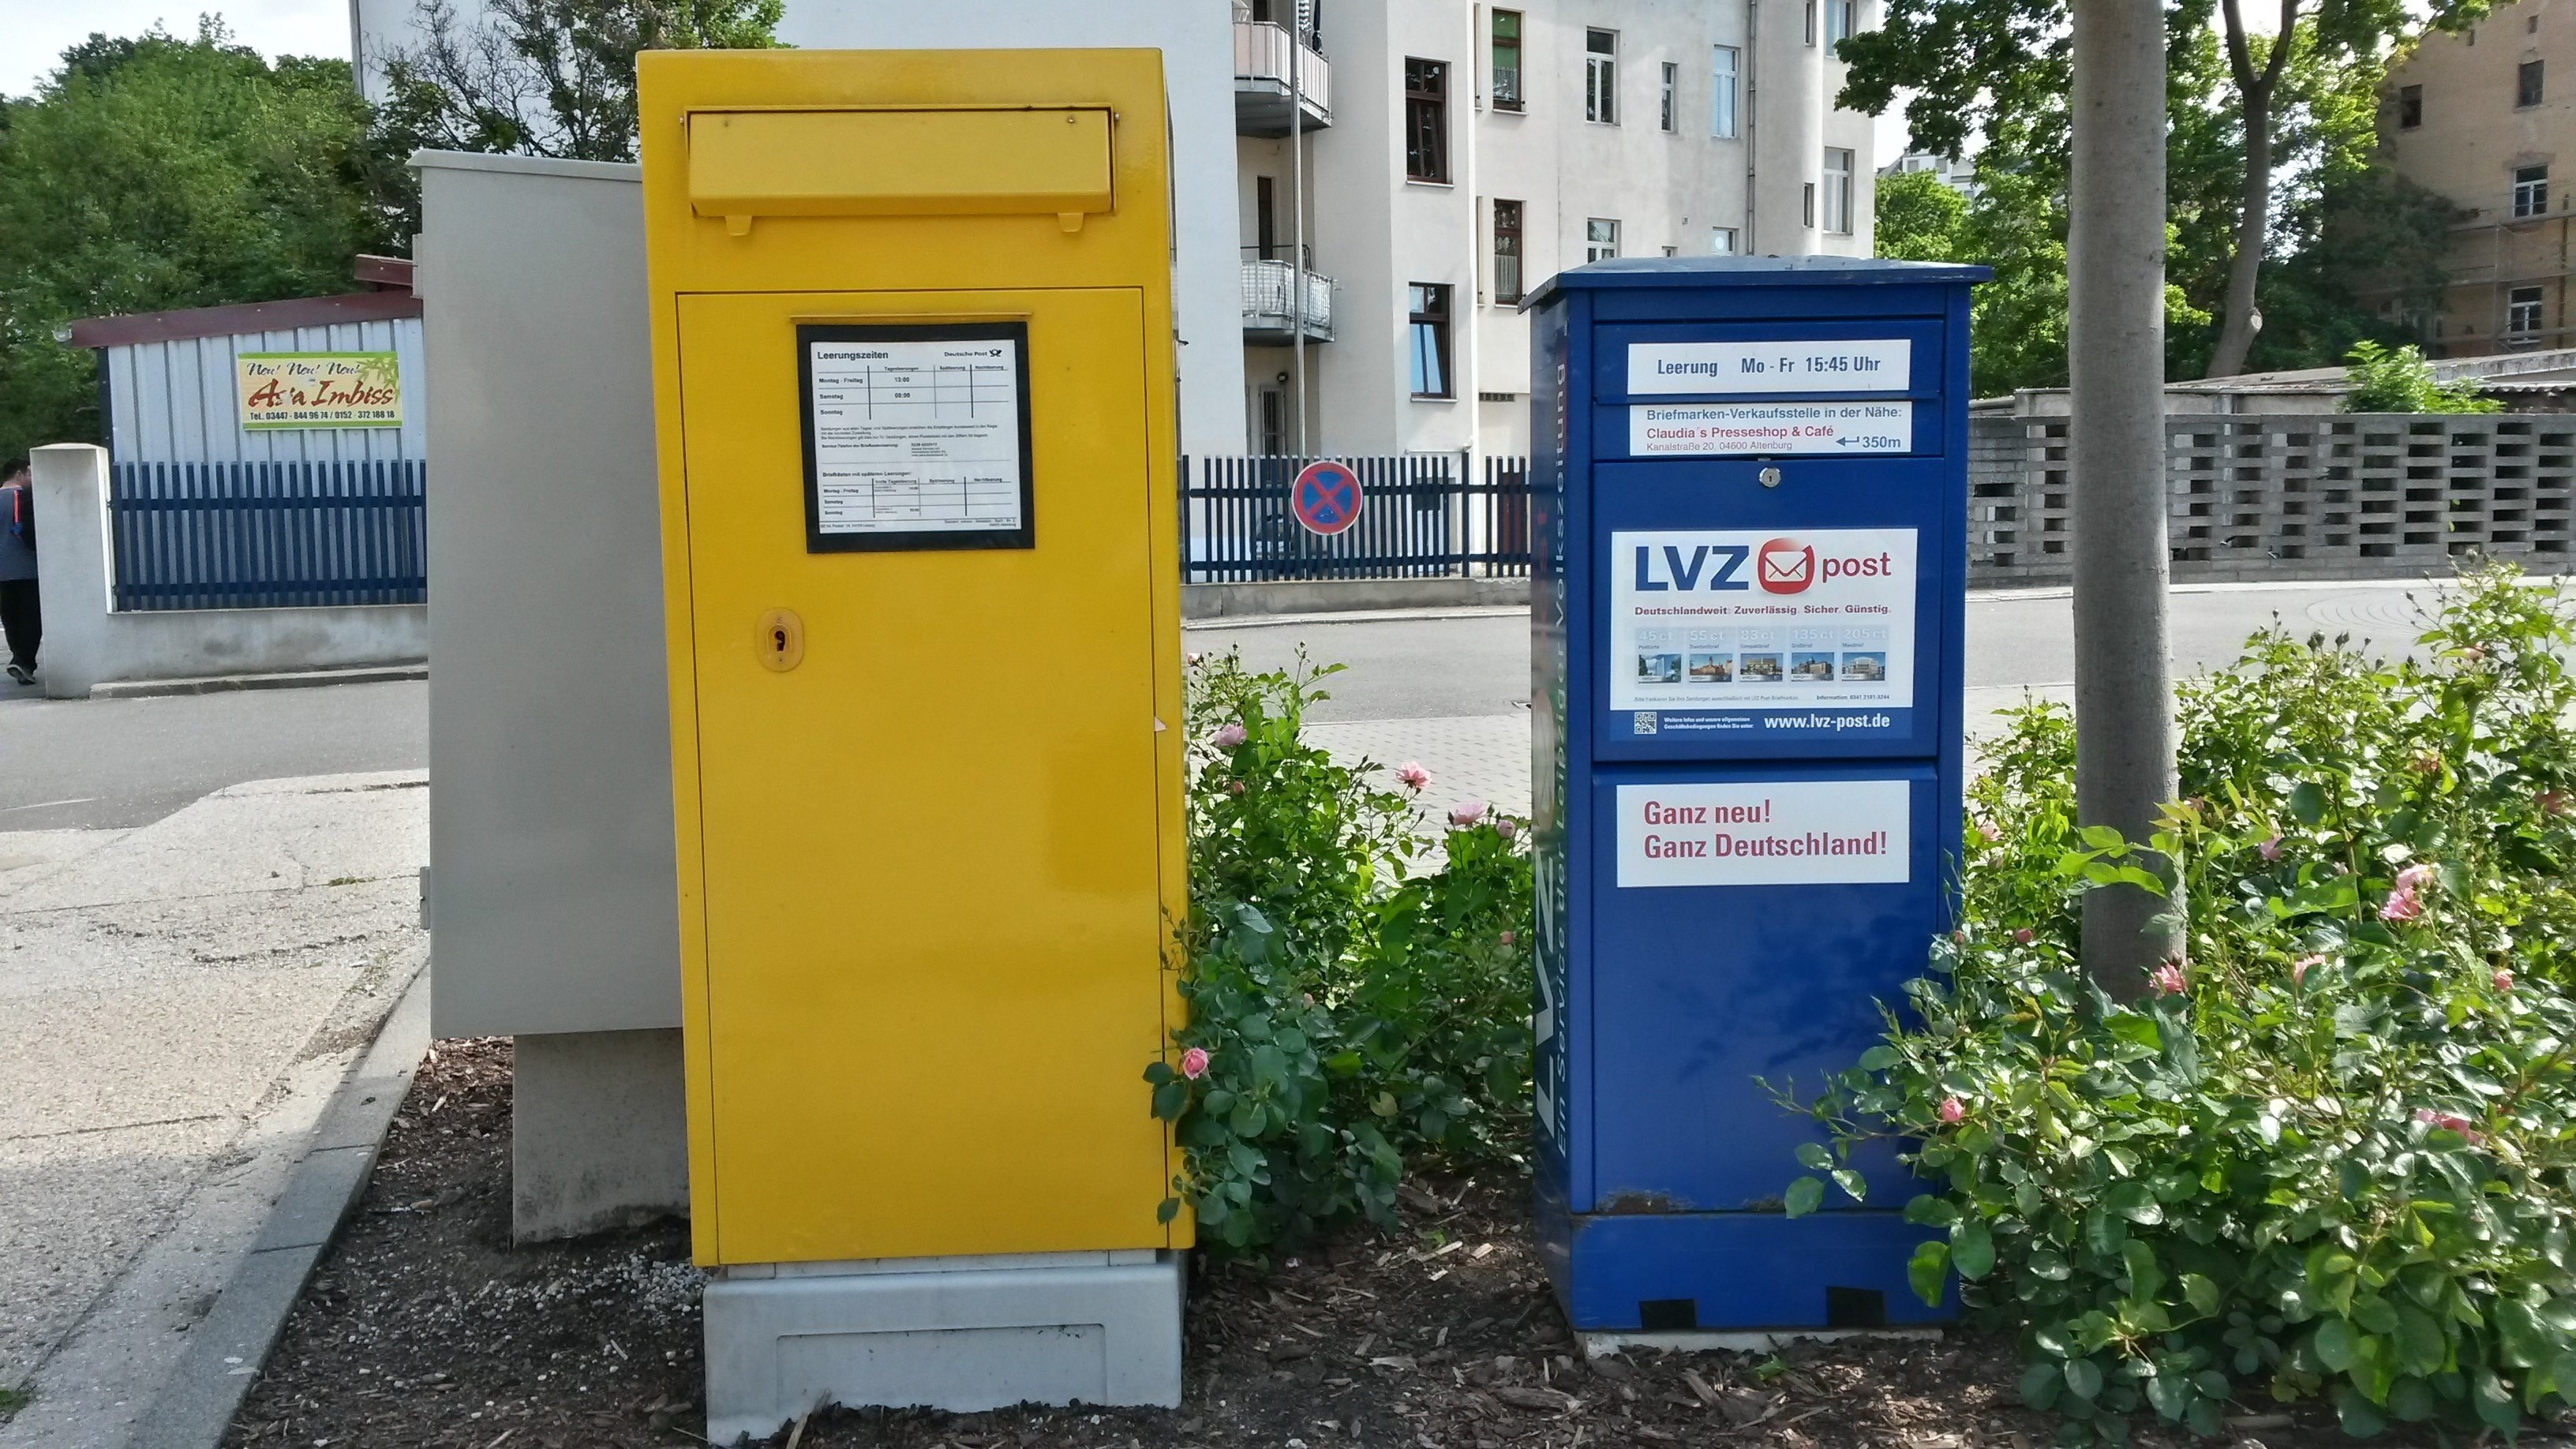 Rechts der Briefkasten der Post AG, links die private Konkurrenz LVZ post.